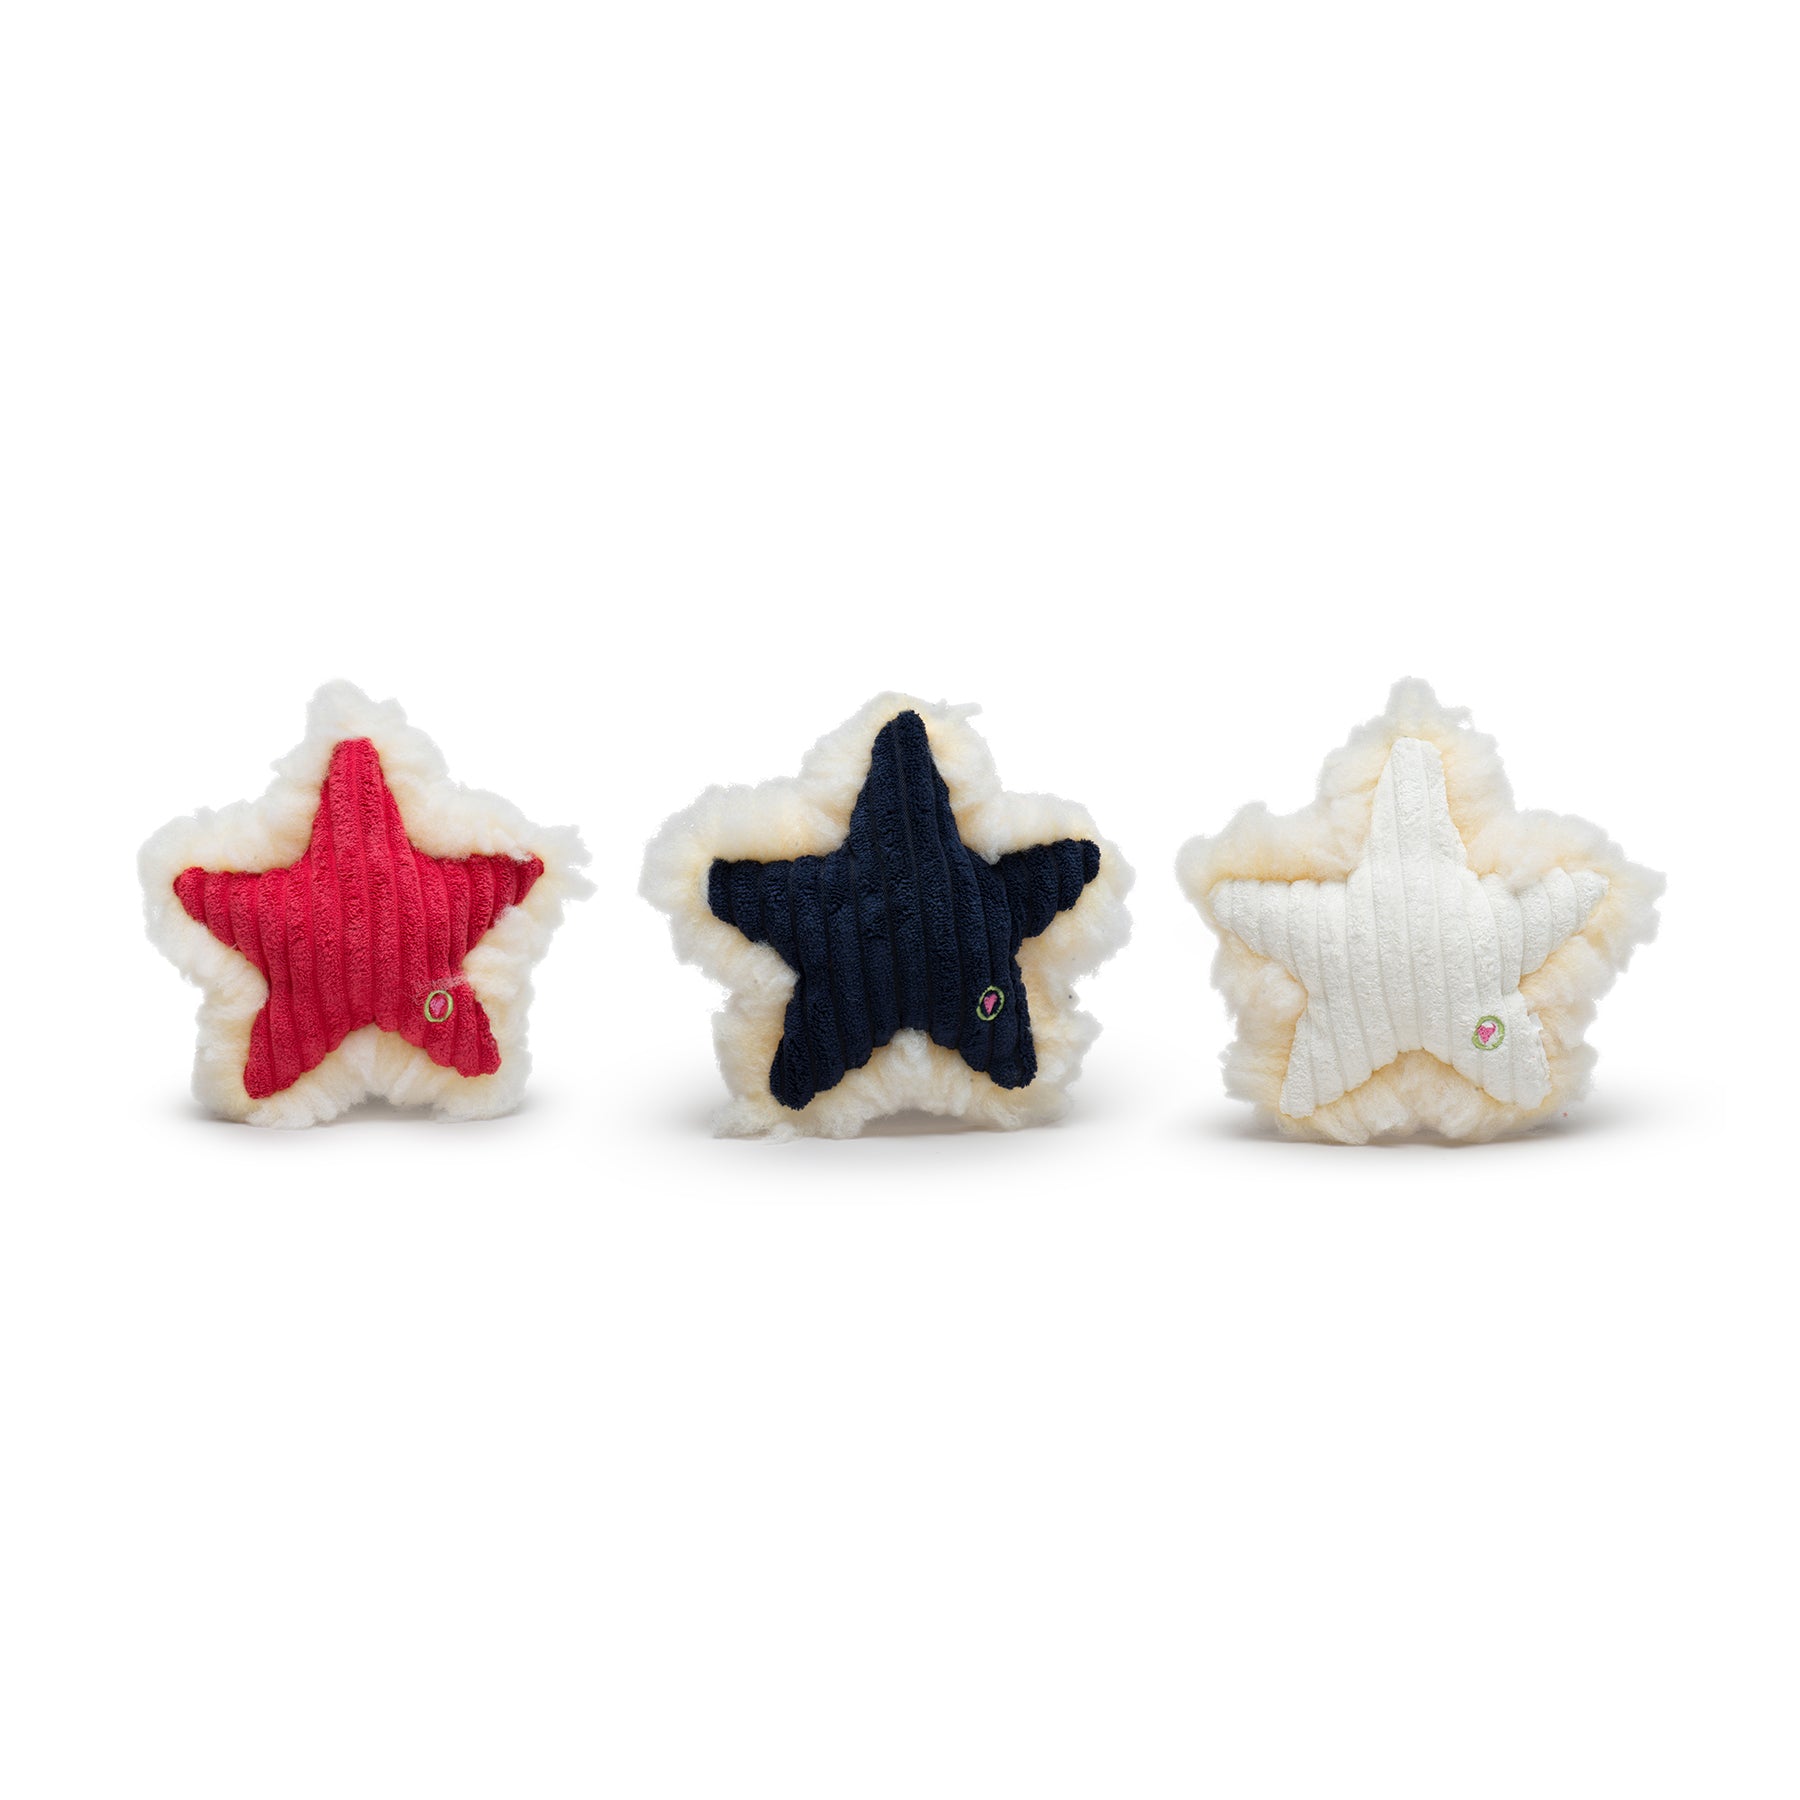 Ol' Red, White & Blue Stars Plush Dog Toys, 3 pack